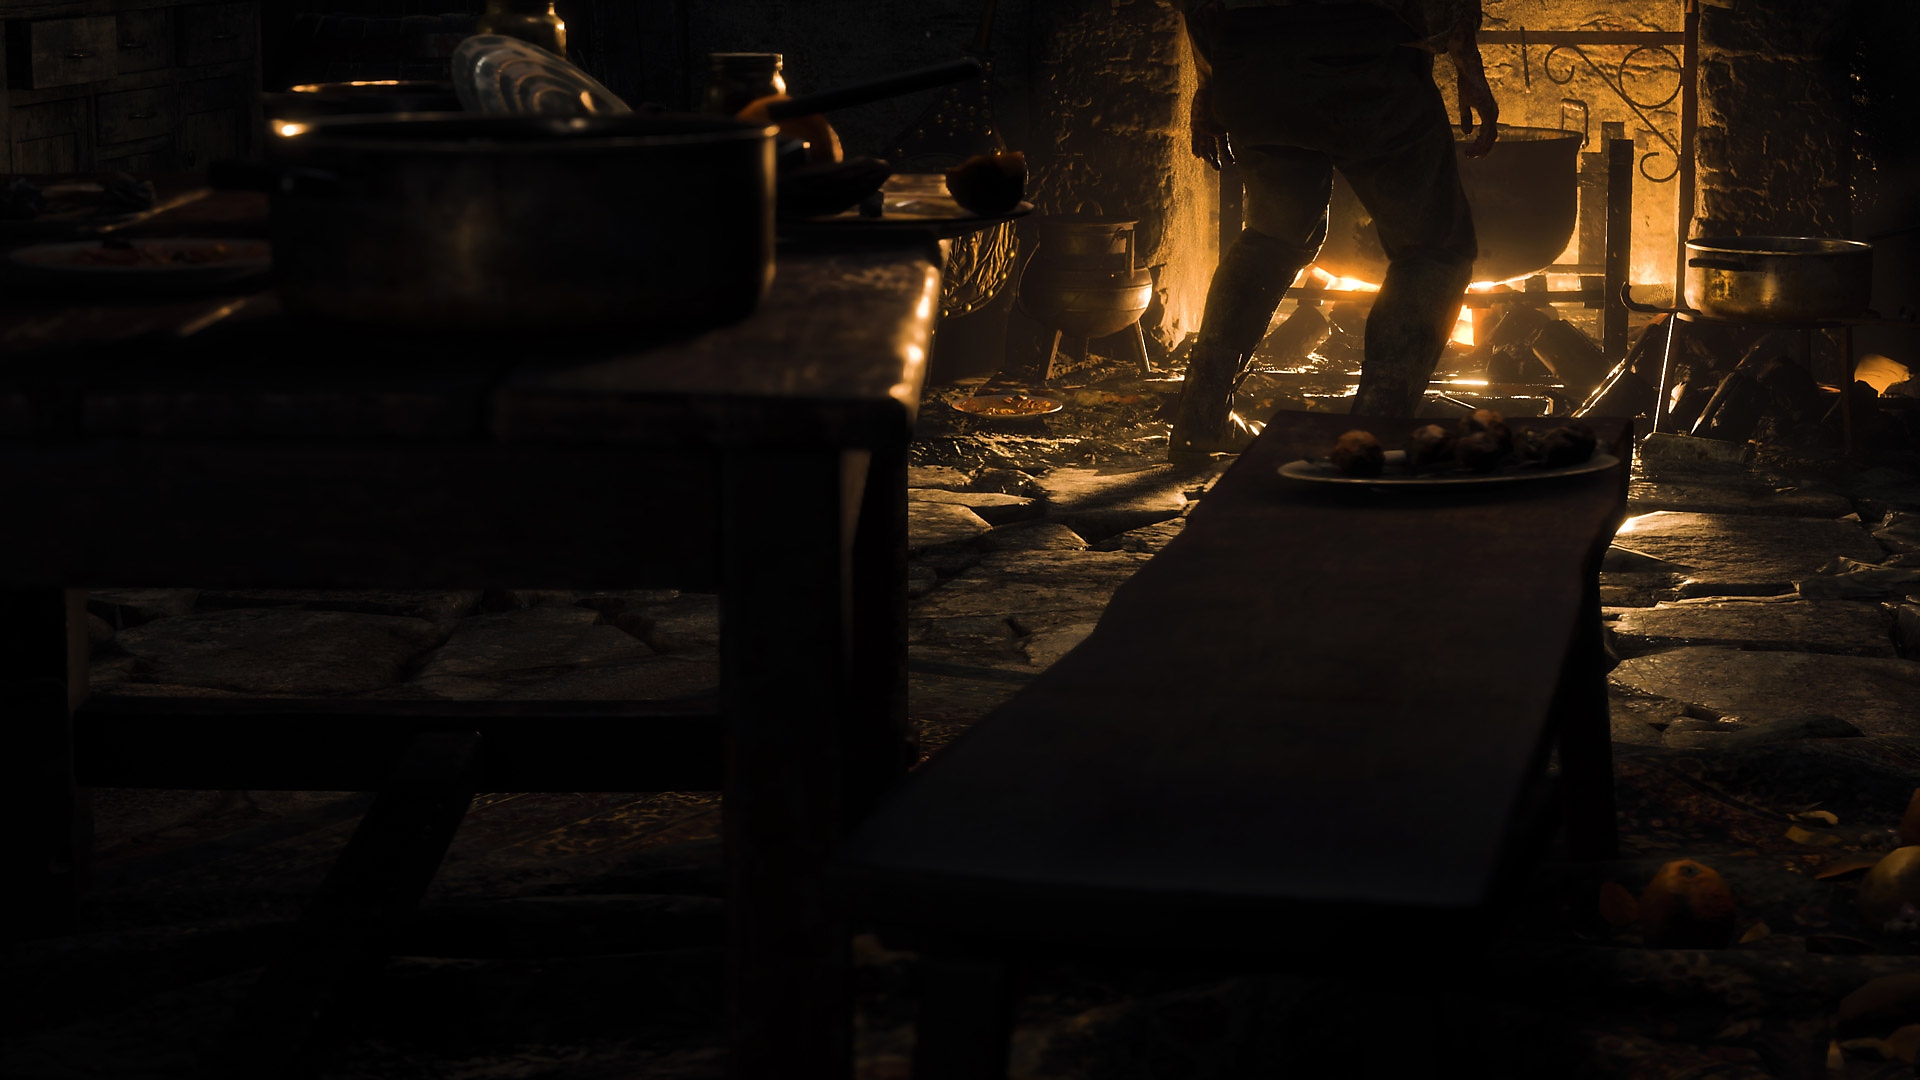 لقطة شاشة من Resident Evil 4 تعرض منطقة مطبخ ريفية مضاءة بالشموع فقط.